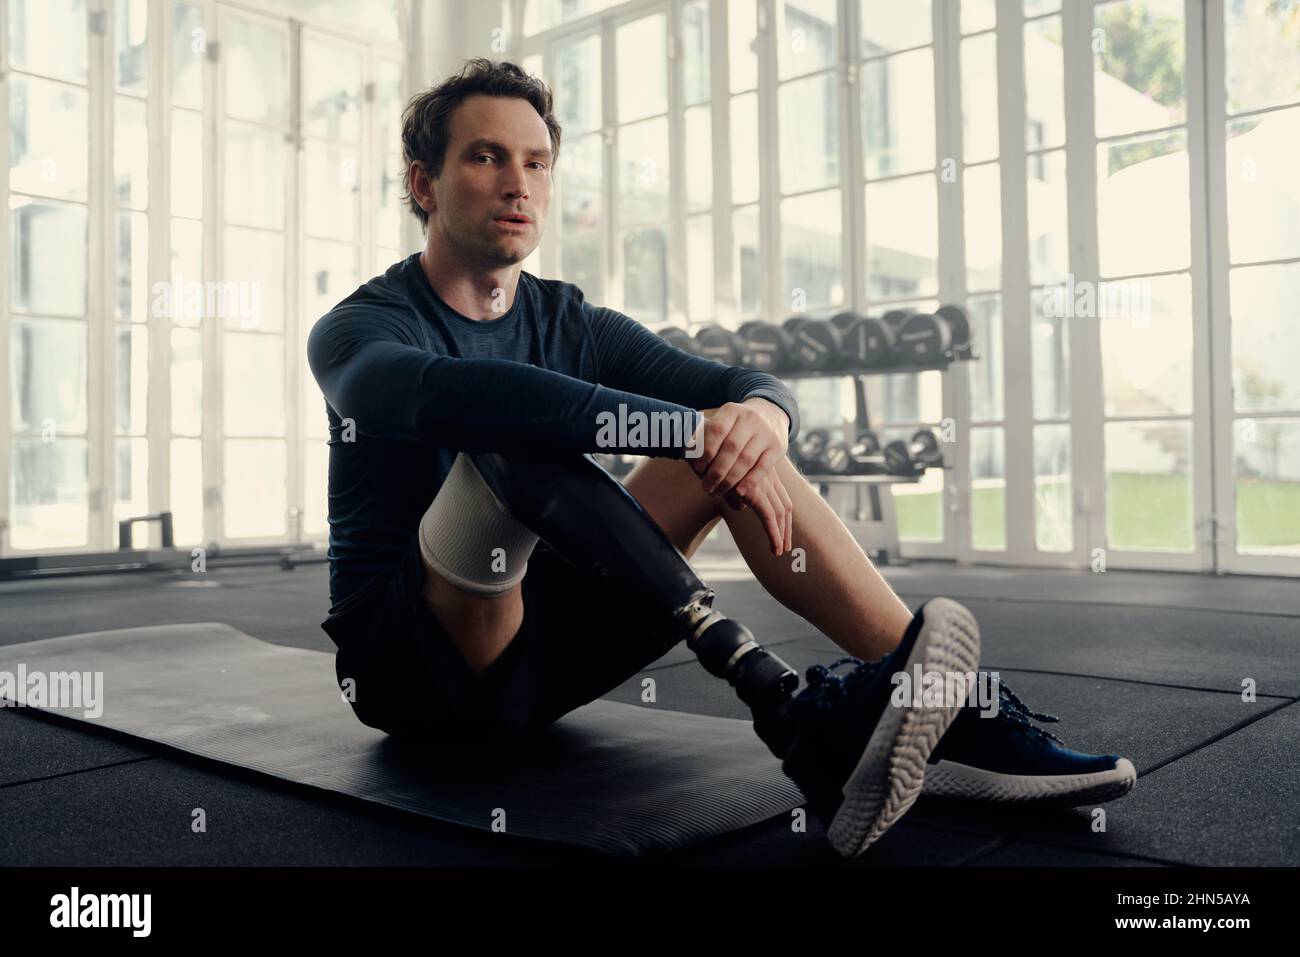 Portrait d'un athlète paralympique masculin avec une jambe prothétique assise sur un tapis regardant dans la caméra avec une expression sérieuse sur son visage. Banque D'Images